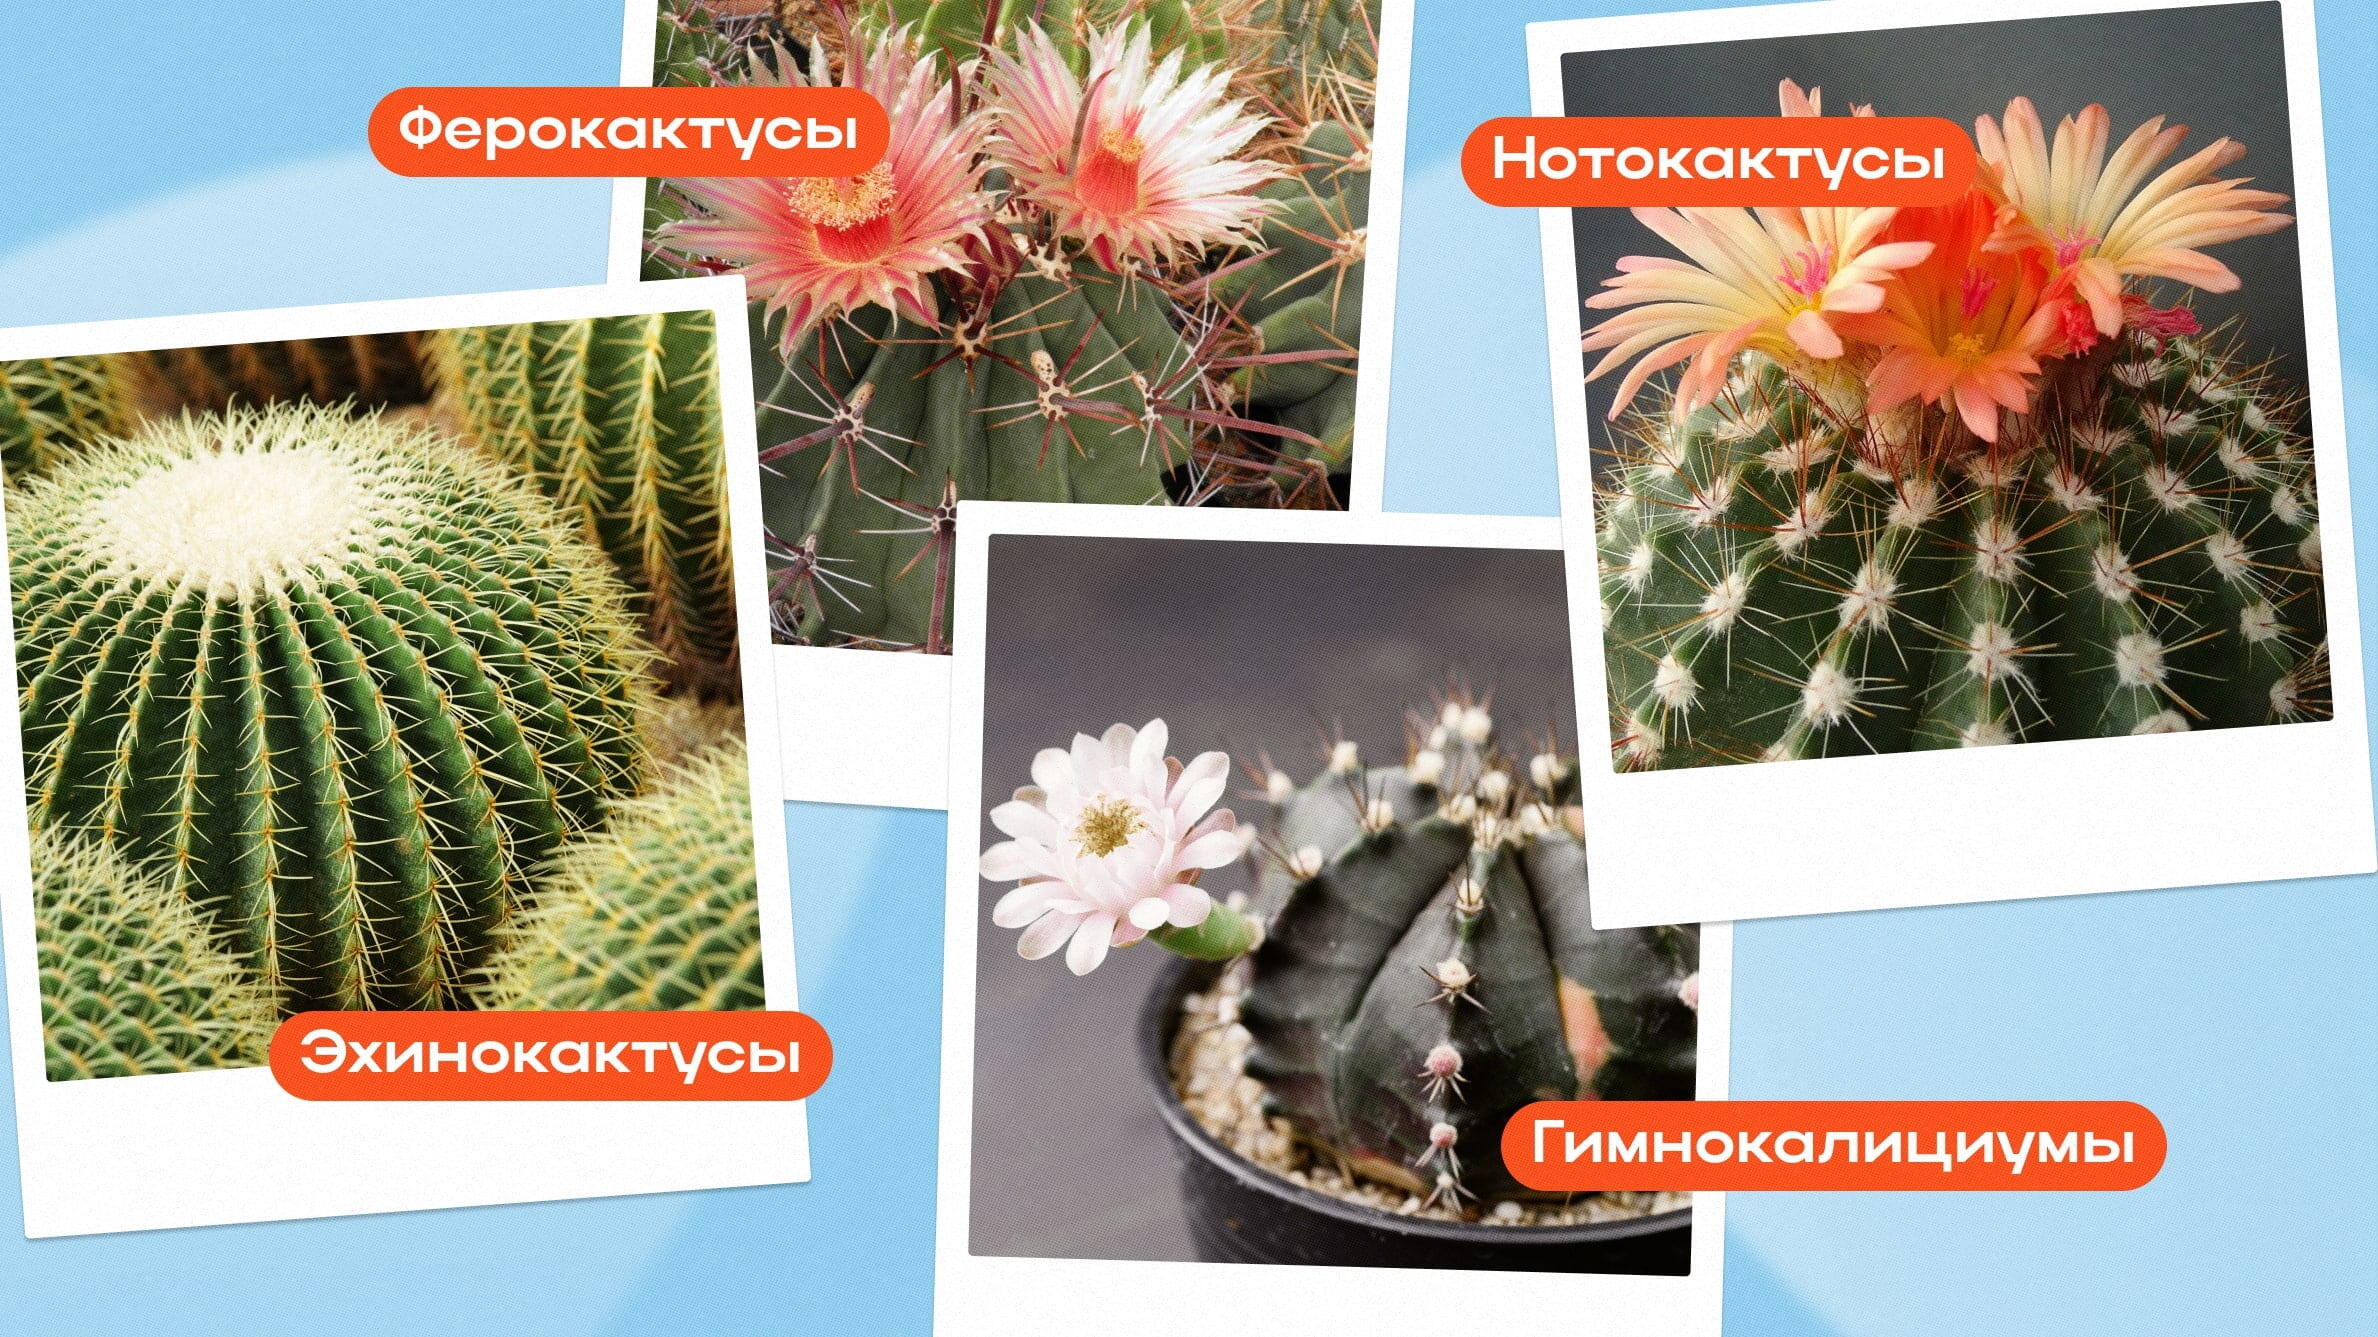 Цветы похожие на кактус: описание и фото экзотических комнатных растений